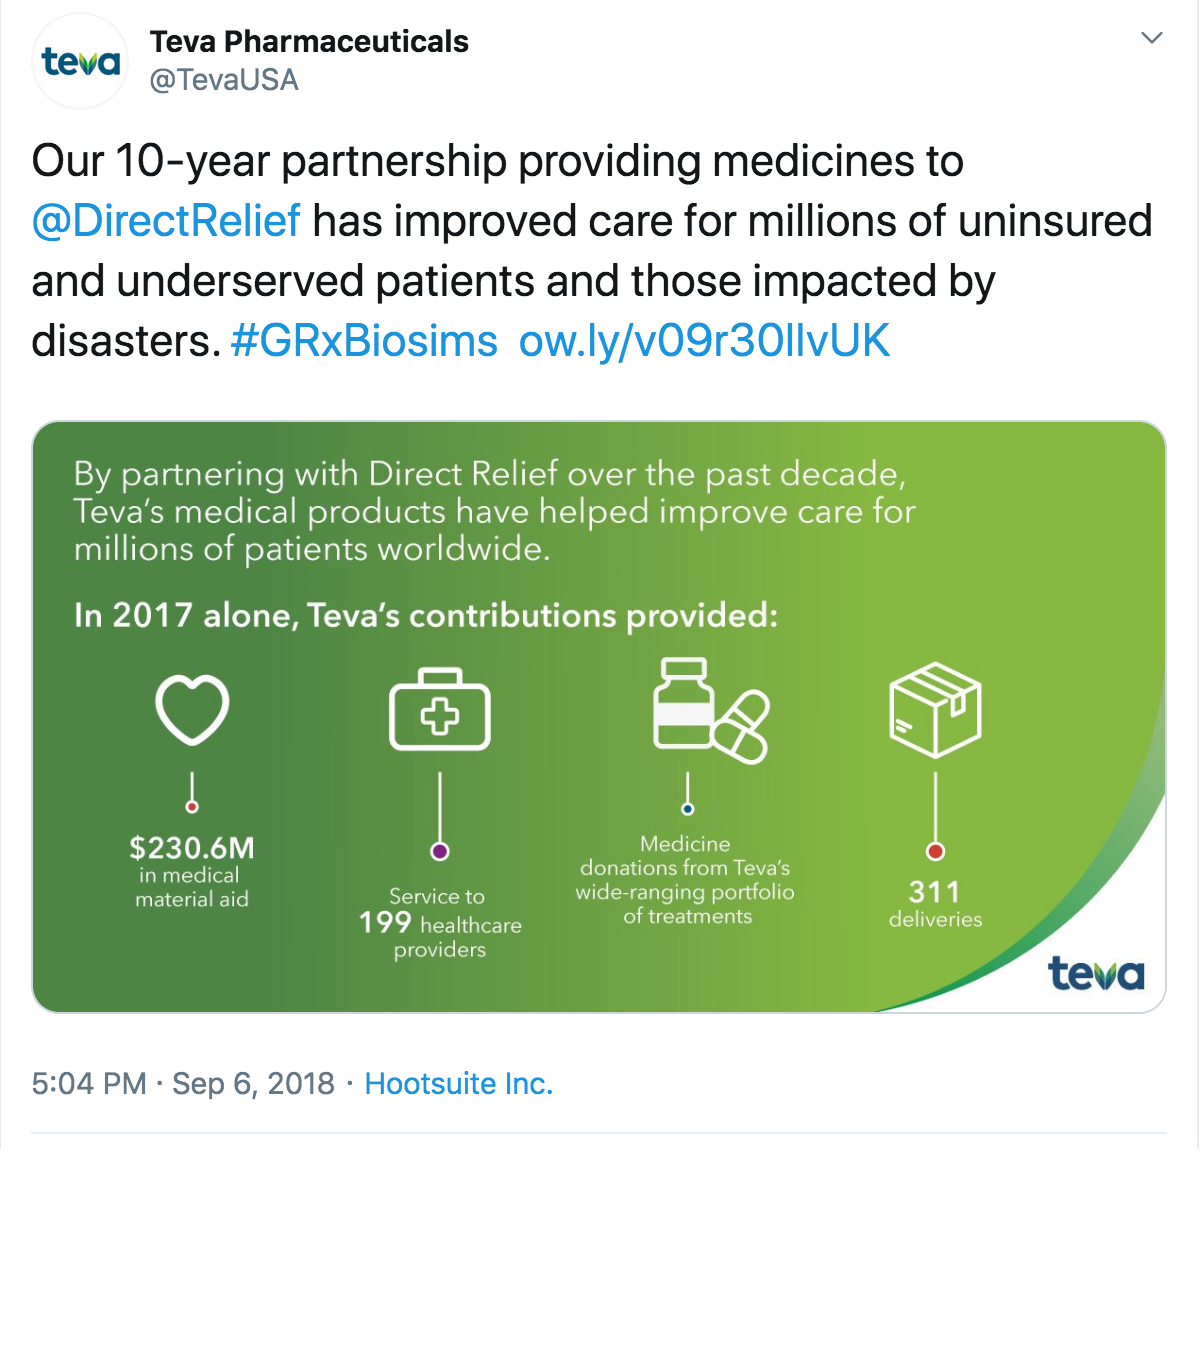 Tweet by Teva Pharmaceuticals